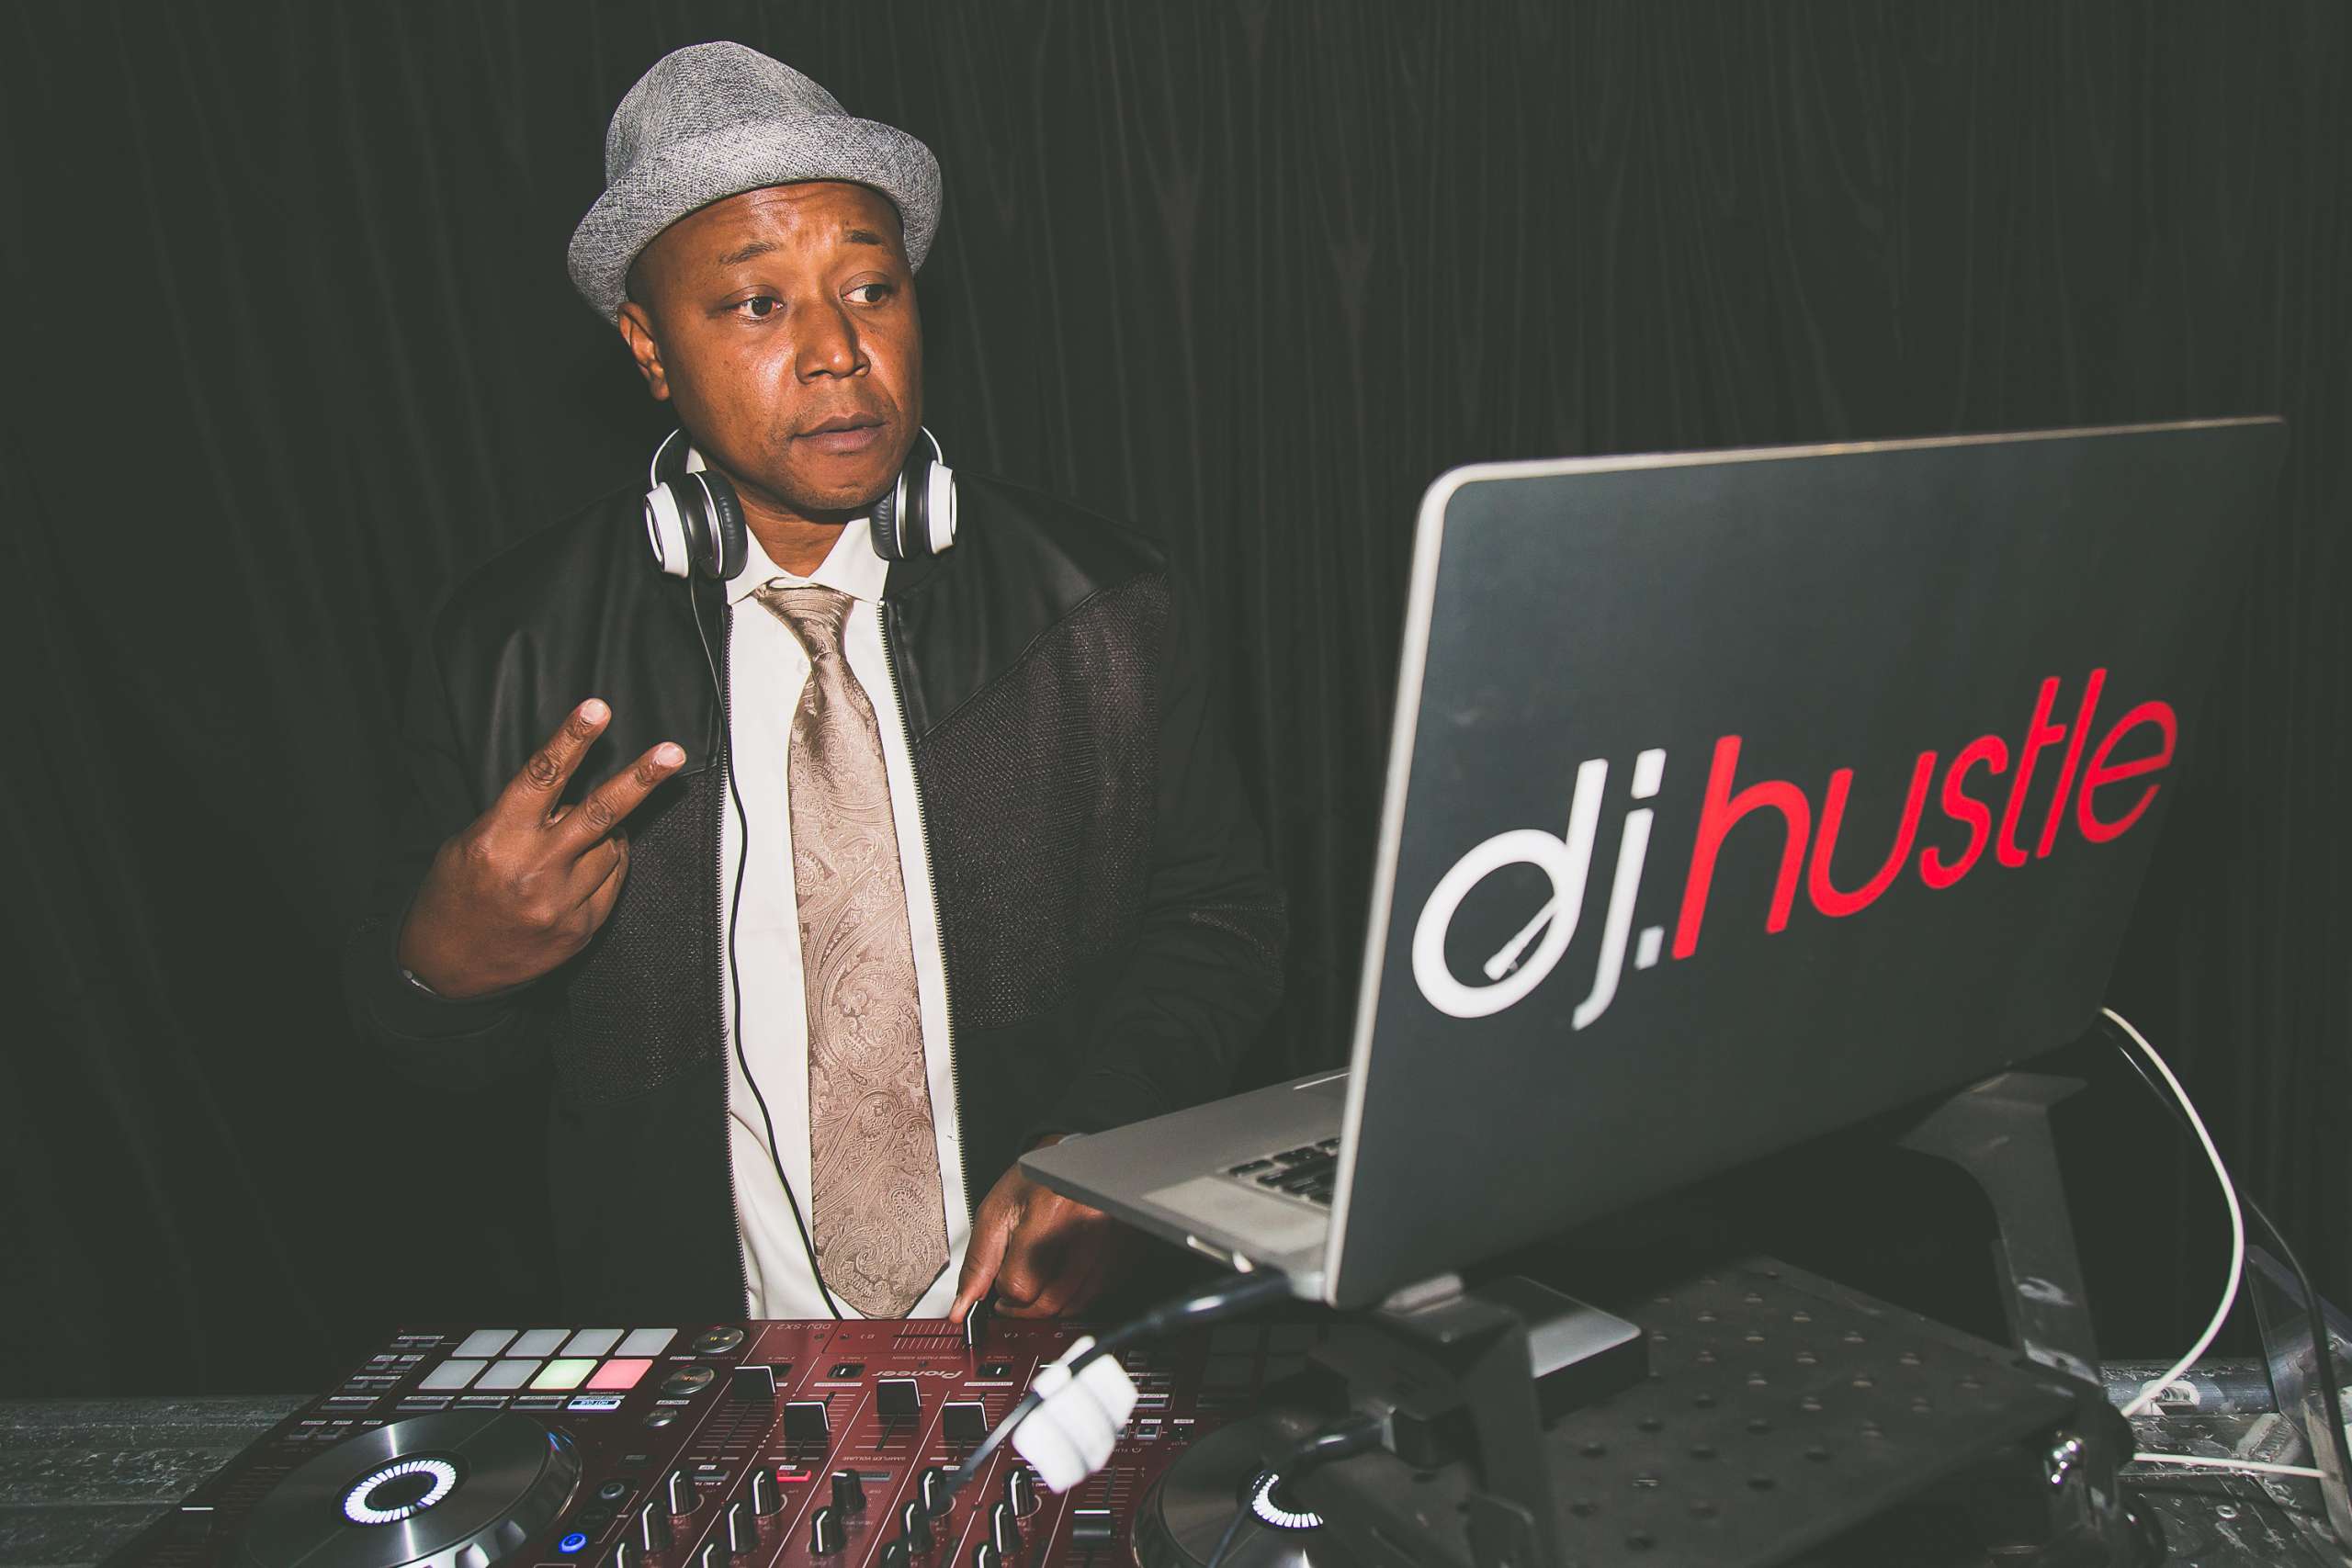 DJ Hustle DJ Hustle Celebrity DJ